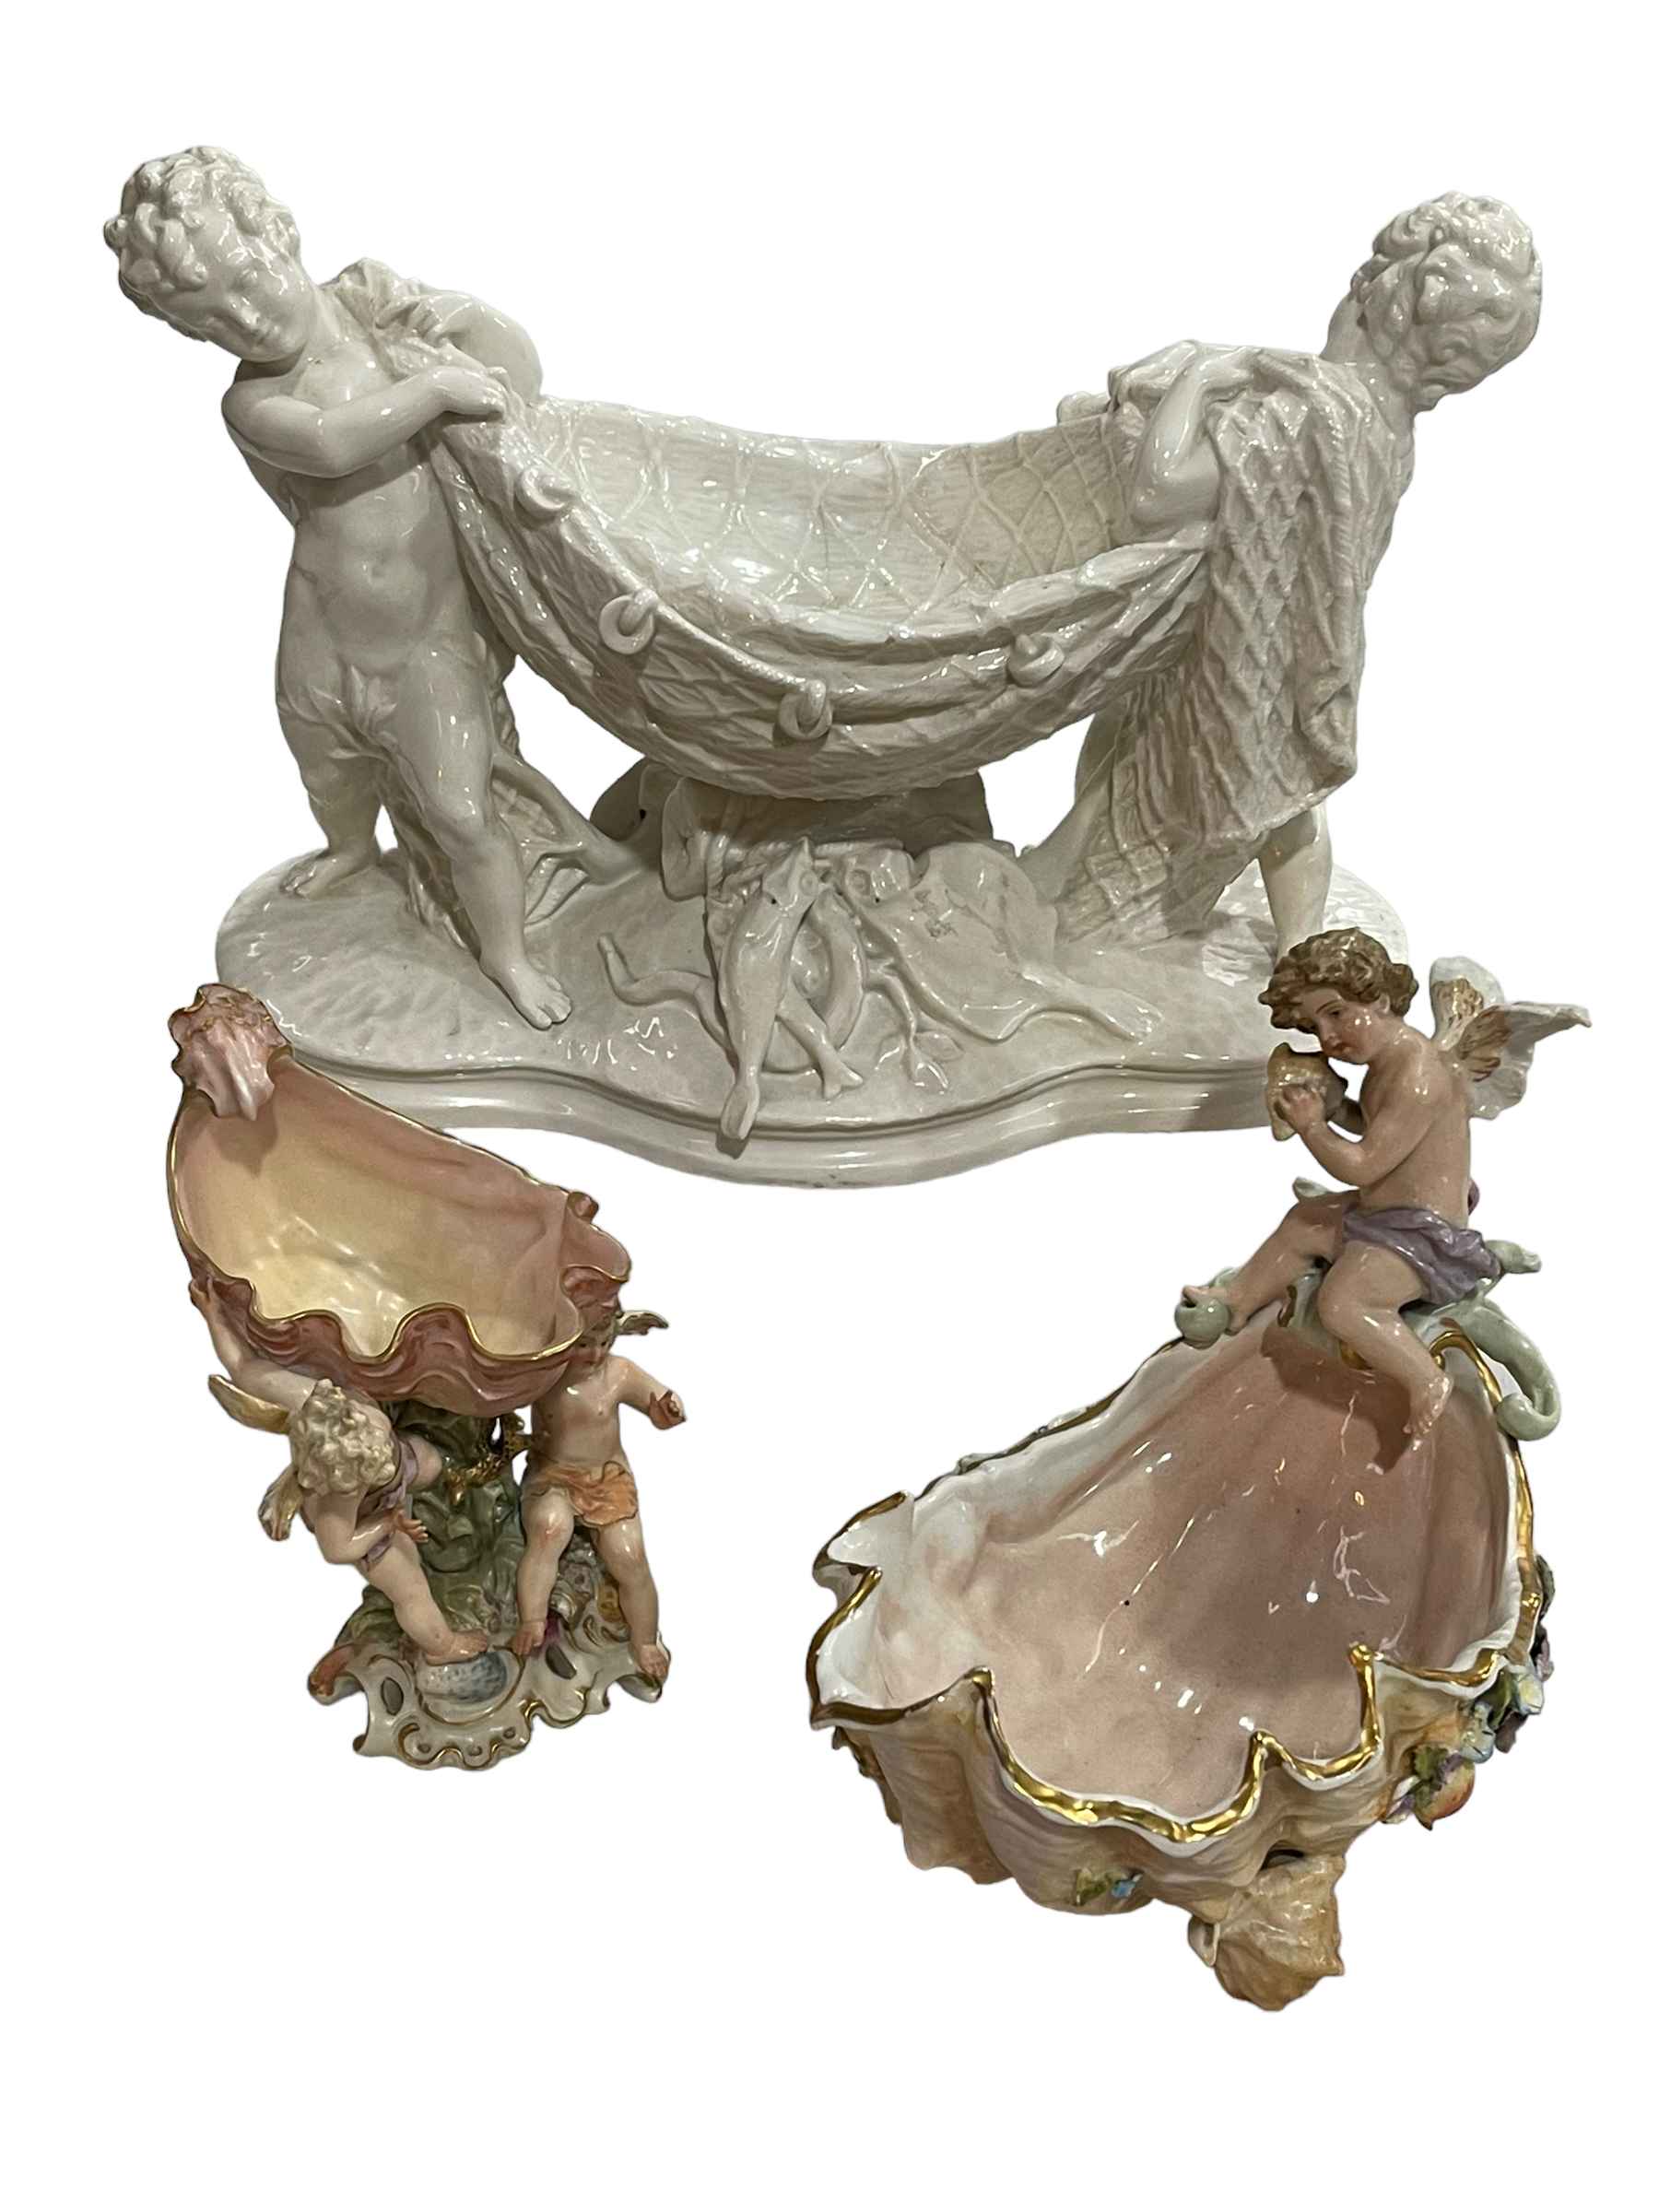 Blanche de Chine cherub centre piece, and two Continental cherub and shell vases (3).